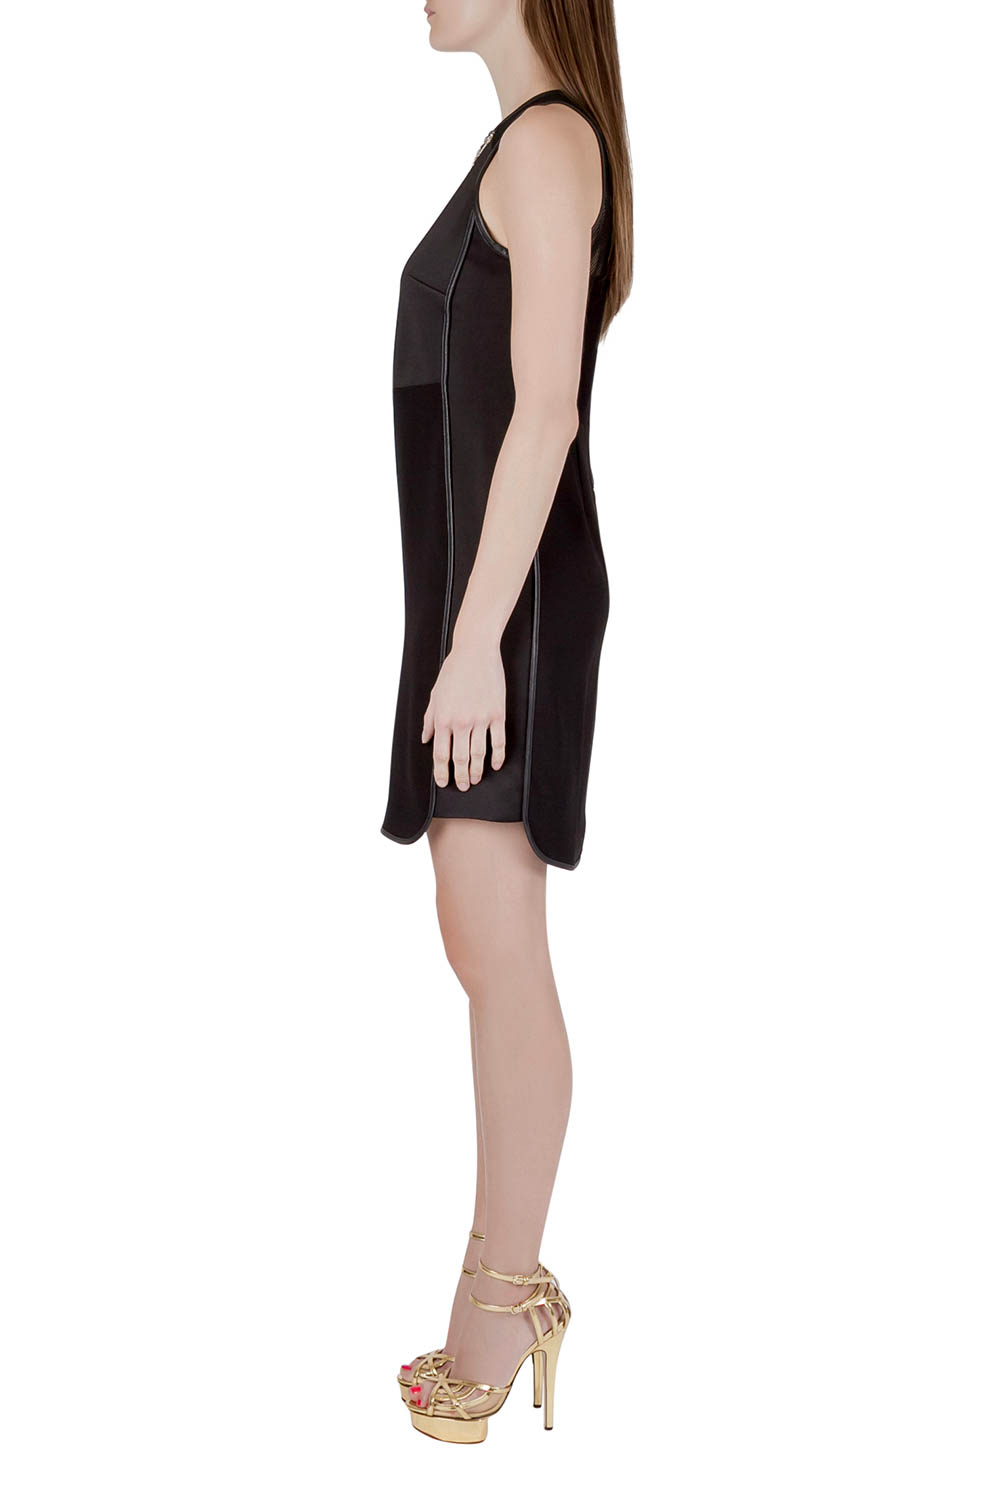 

Rebecca Taylor Black Neoprene and Mesh Embellished Neckline Dress